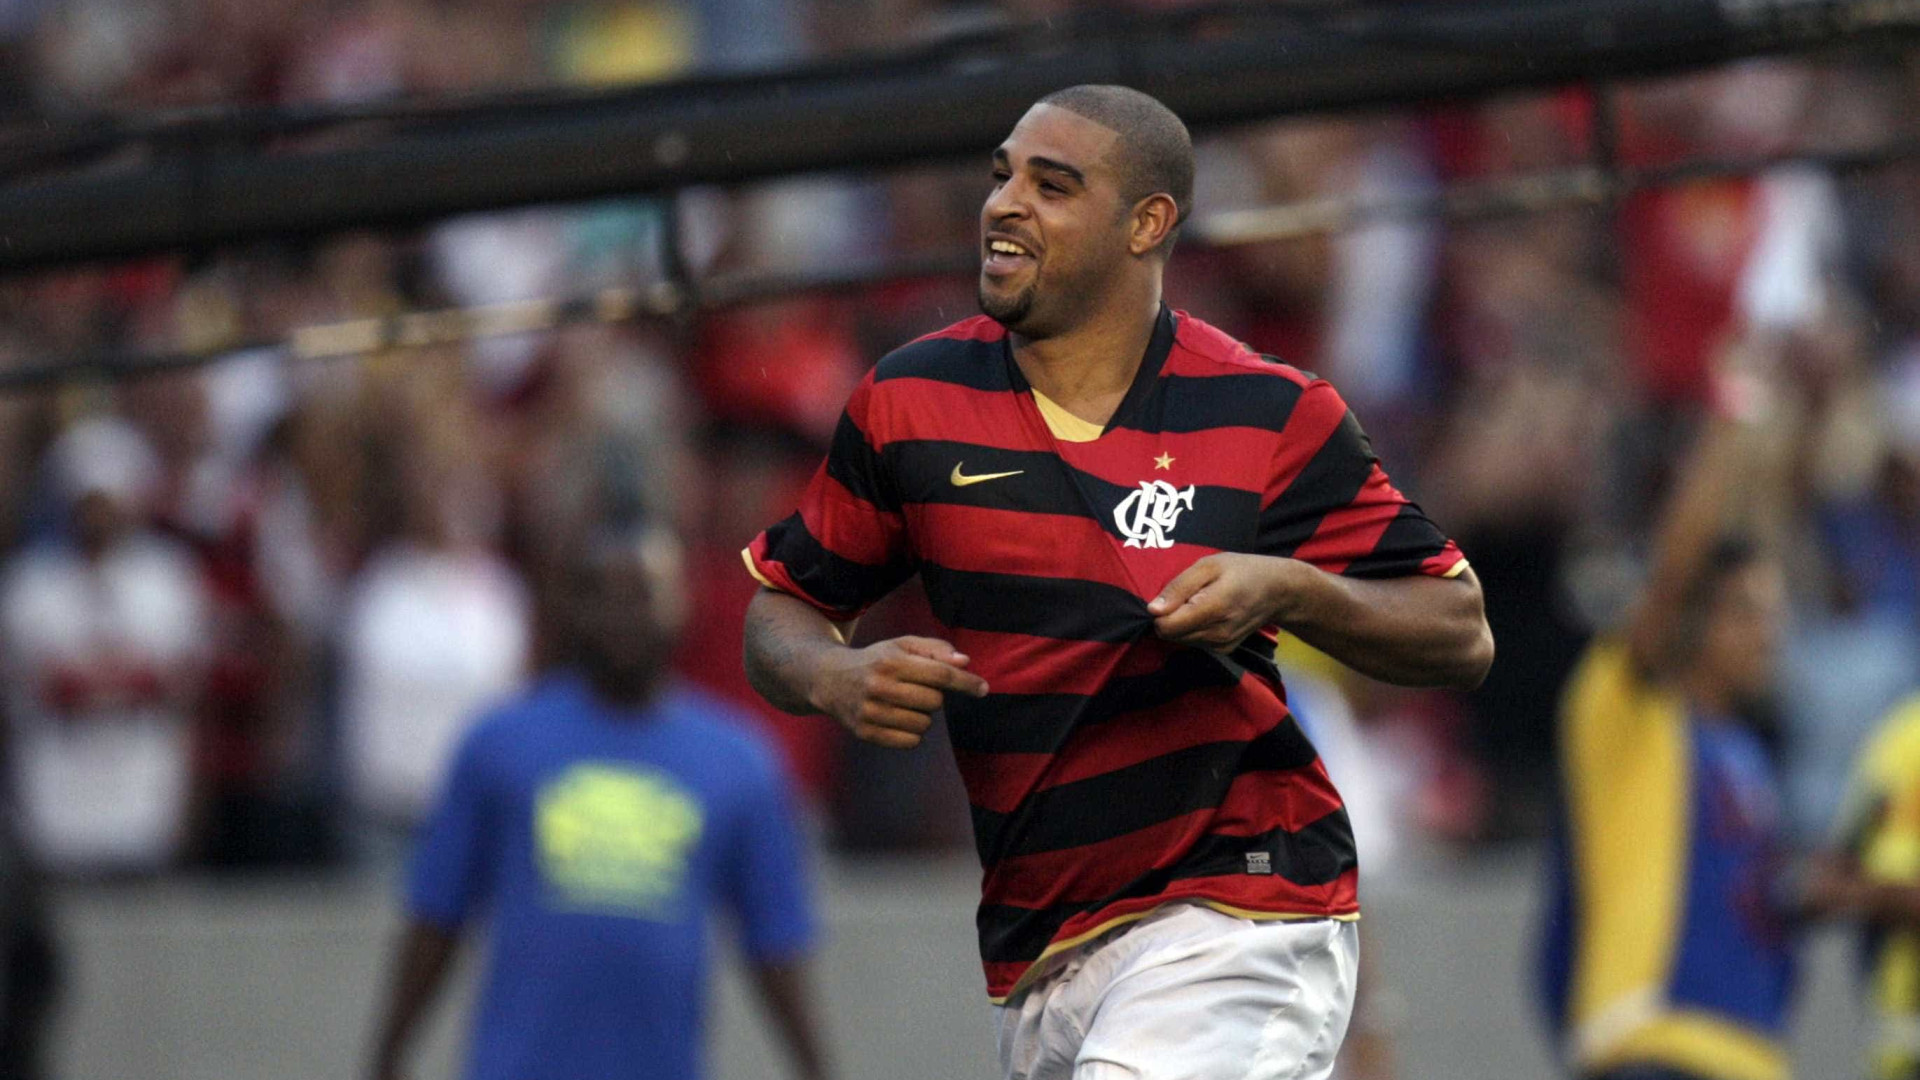 Adriano diz que nÃ£o se aposentou e cogita retorno em time brasileiro
